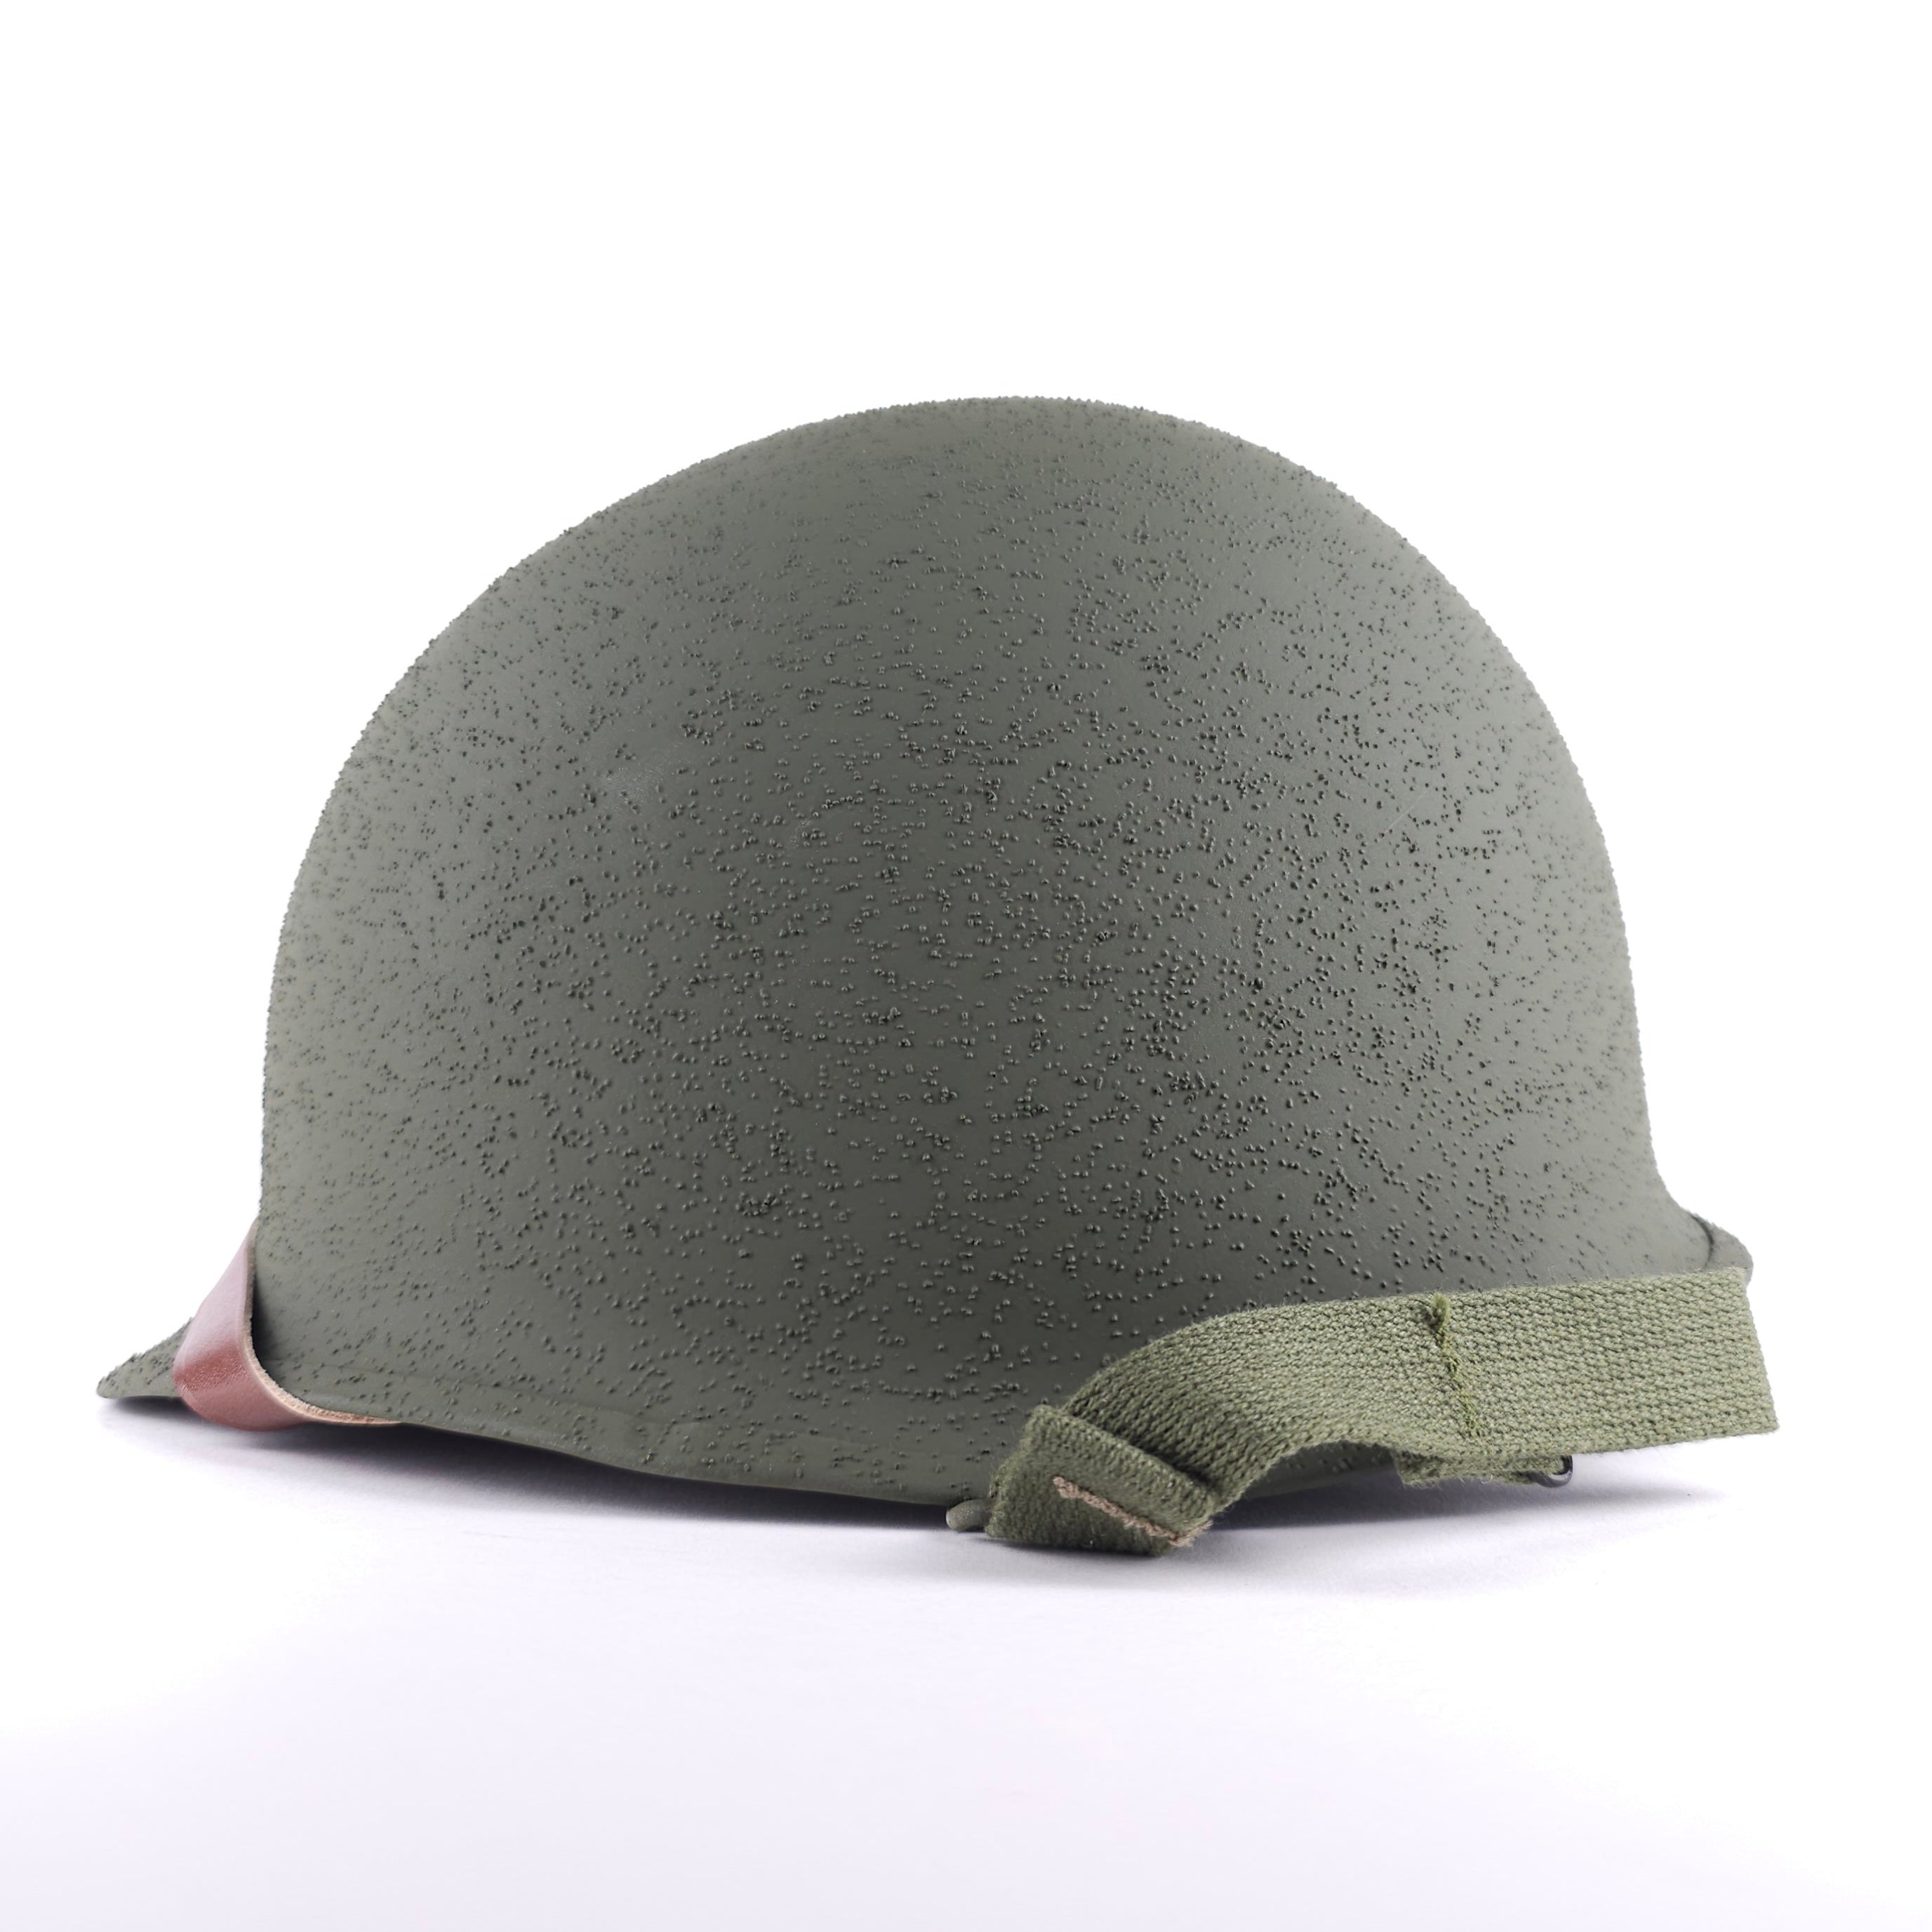 WWII M1 Helmet - Late War - Infantry